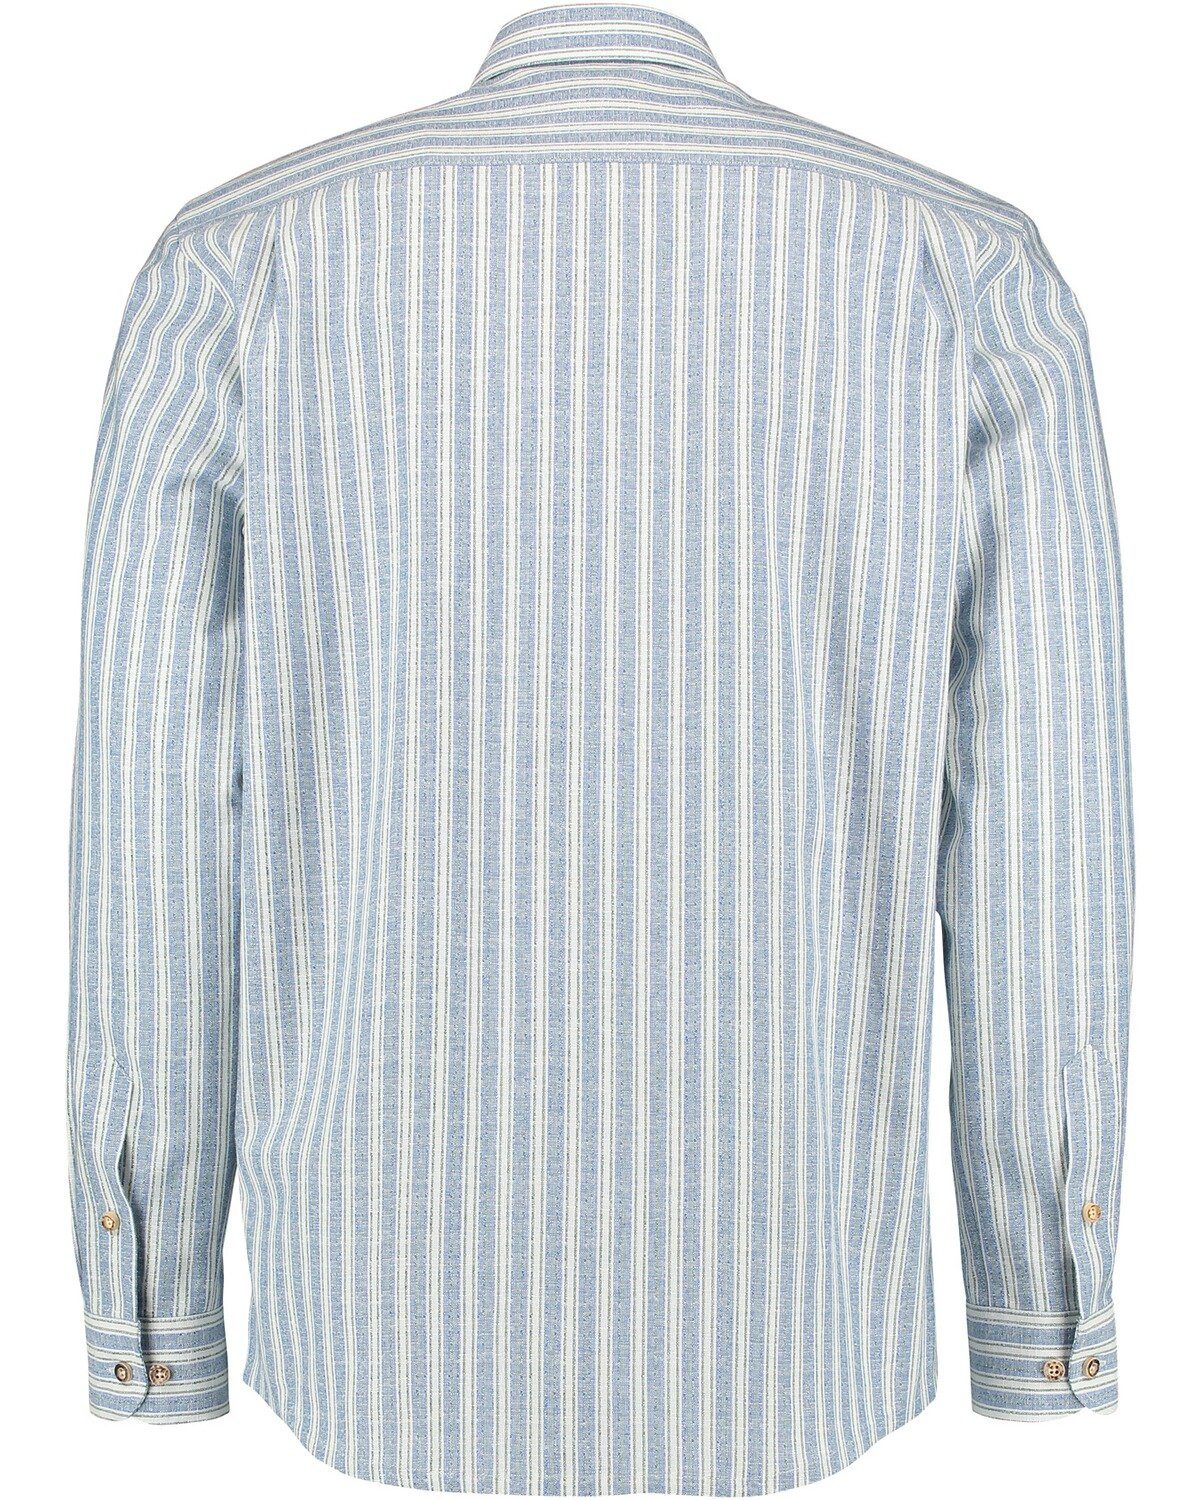 Luis Steindl Trachtenhemd Blau Streifen mit Trachtenhemd